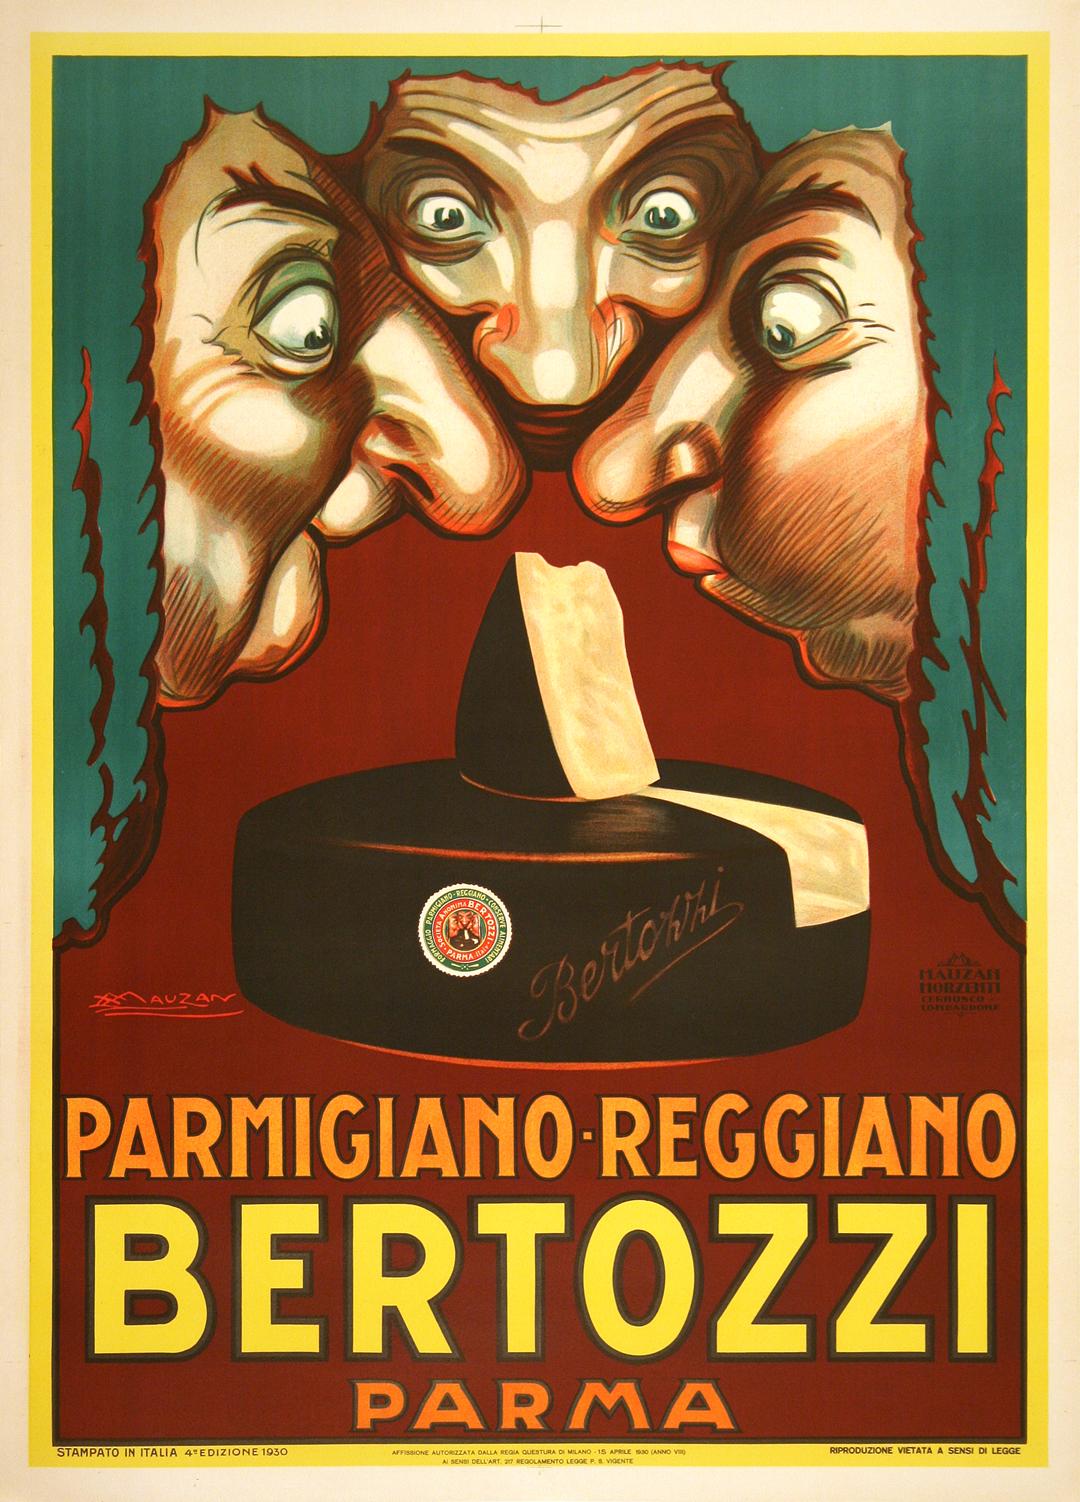 Achille Mauzan schuf dieses alte Plakat im Jahr 1924, um für die Käsemarke Bertozzi zu werben. Drei Richter mit ausdrucksstarken Gesichtern beugen sich über den Käse und geben uns einen Eindruck von dem duftenden und einladenden Geruch des Produkts.